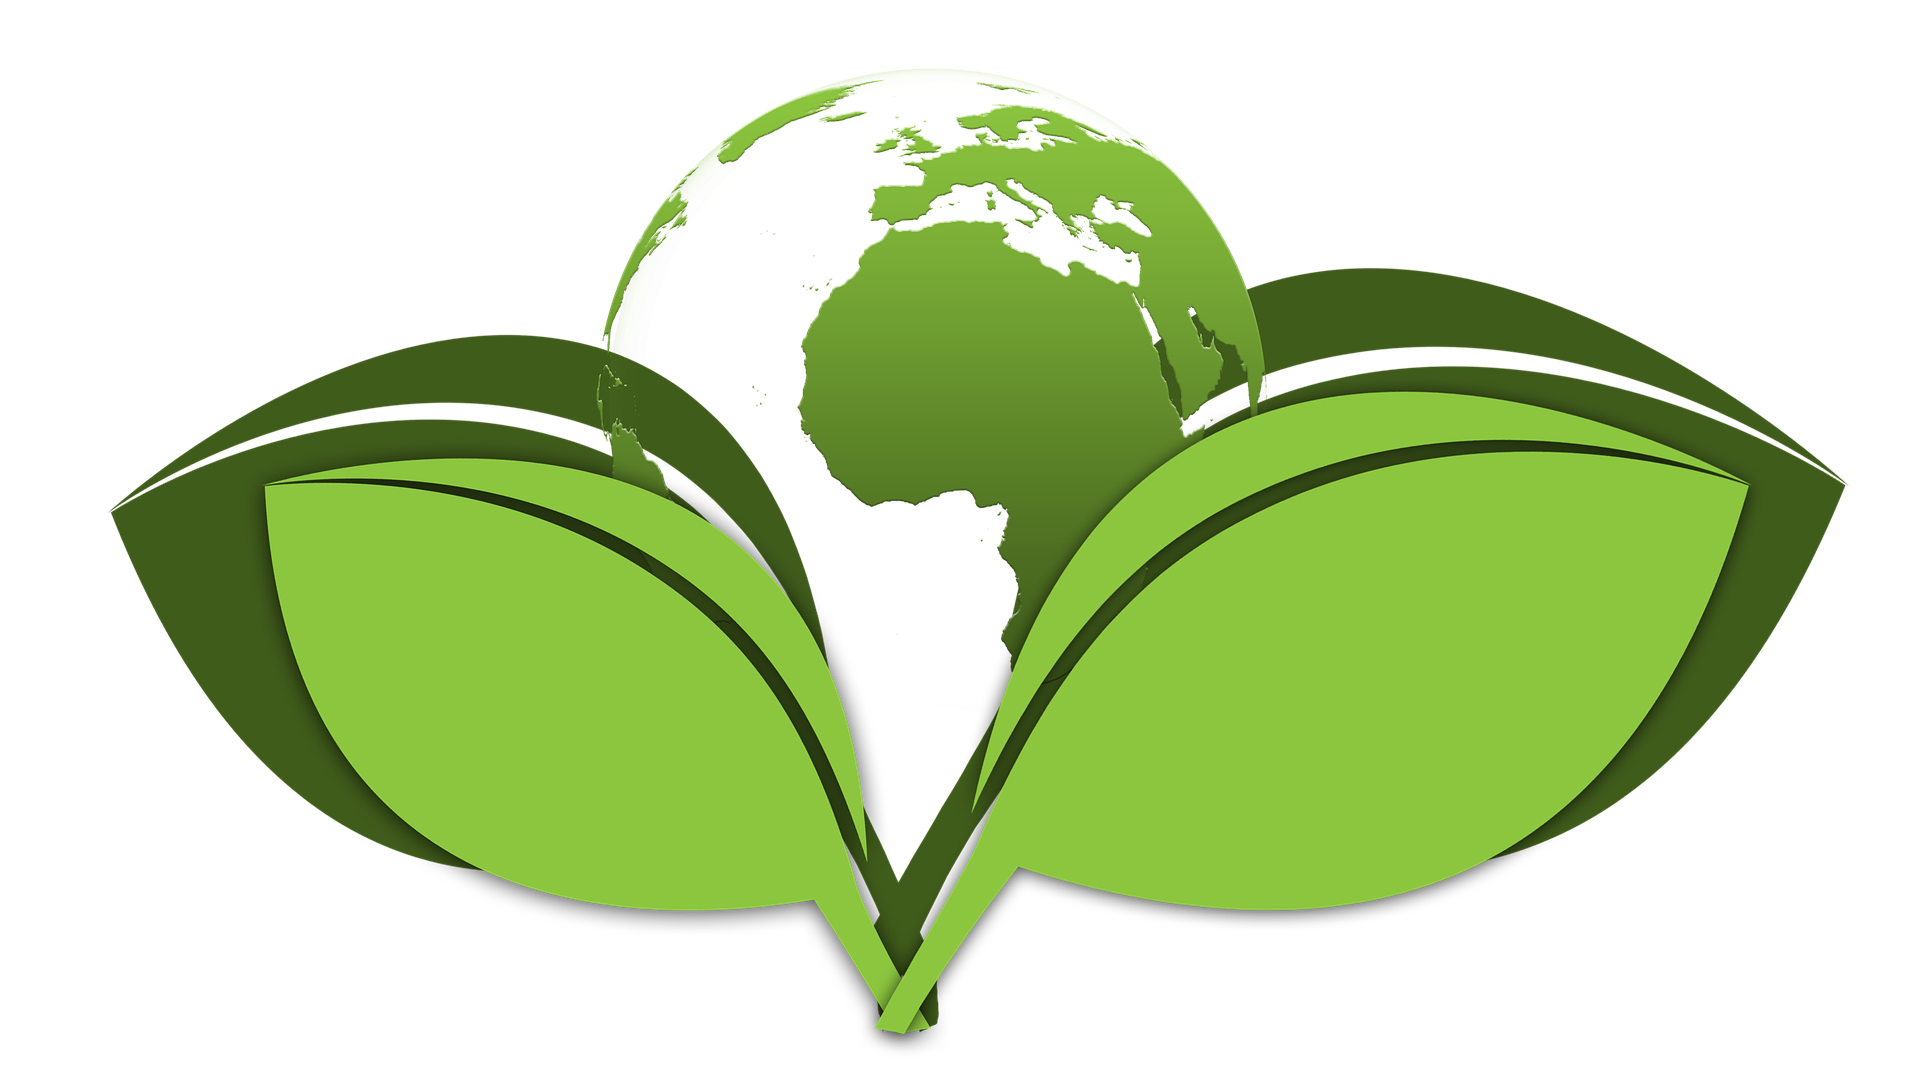 ślad węglowy w formie znaku liści i Ziemi w kolorze zielonym